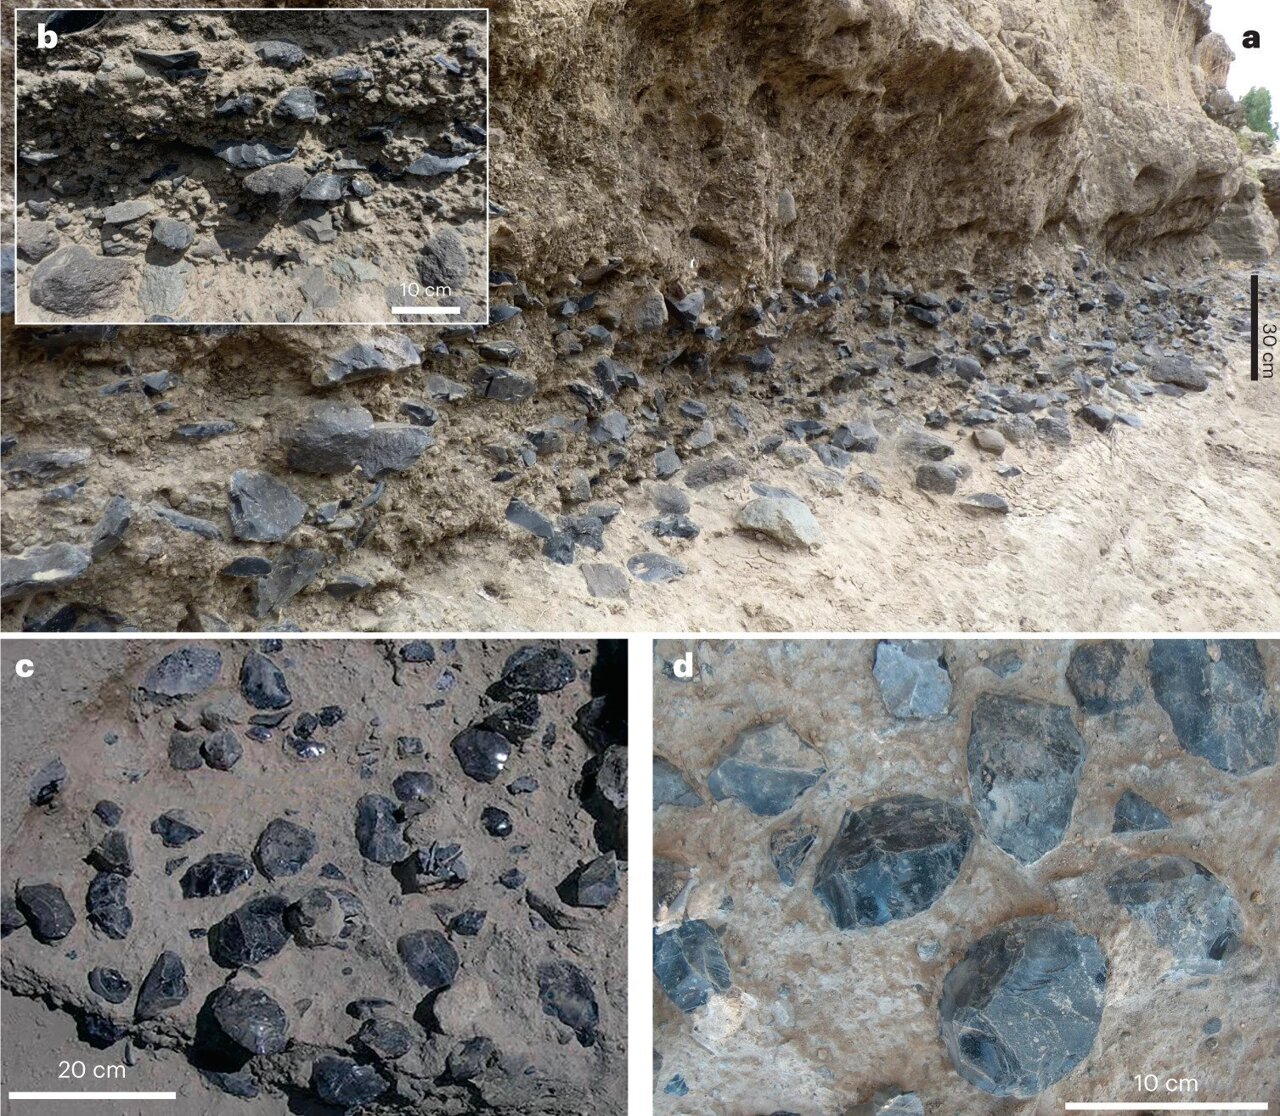 Obsežna kopičenja artefaktov iz obsidiana na nivoju C. a,b, splošen pogled na nivo in podrobnosti gostote artefaktov vzdolž pečine MS (a) in vložka (b). c,d, Splošni pogled (c) in detajl (d) koncentracije artefakta (predvsem sekire) v poskusni jami leta 2004.